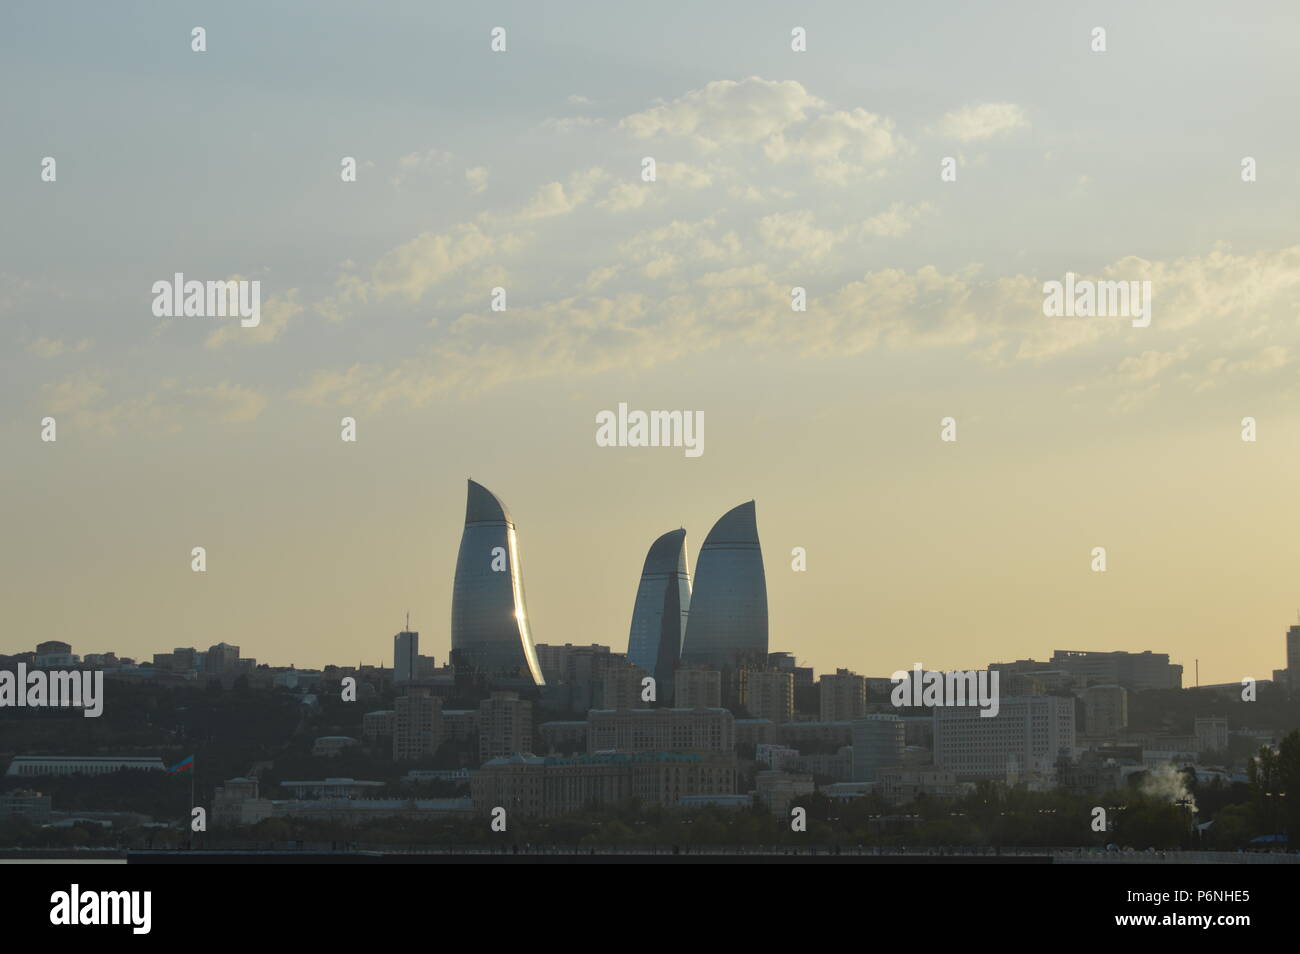 Las torres en llamas de Bakú, Azerbaiyán. Tomado de Nikon durante mi primer viaje a Bakú en verano de 2015. La fotografía de viajes en Bakú. Foto de stock